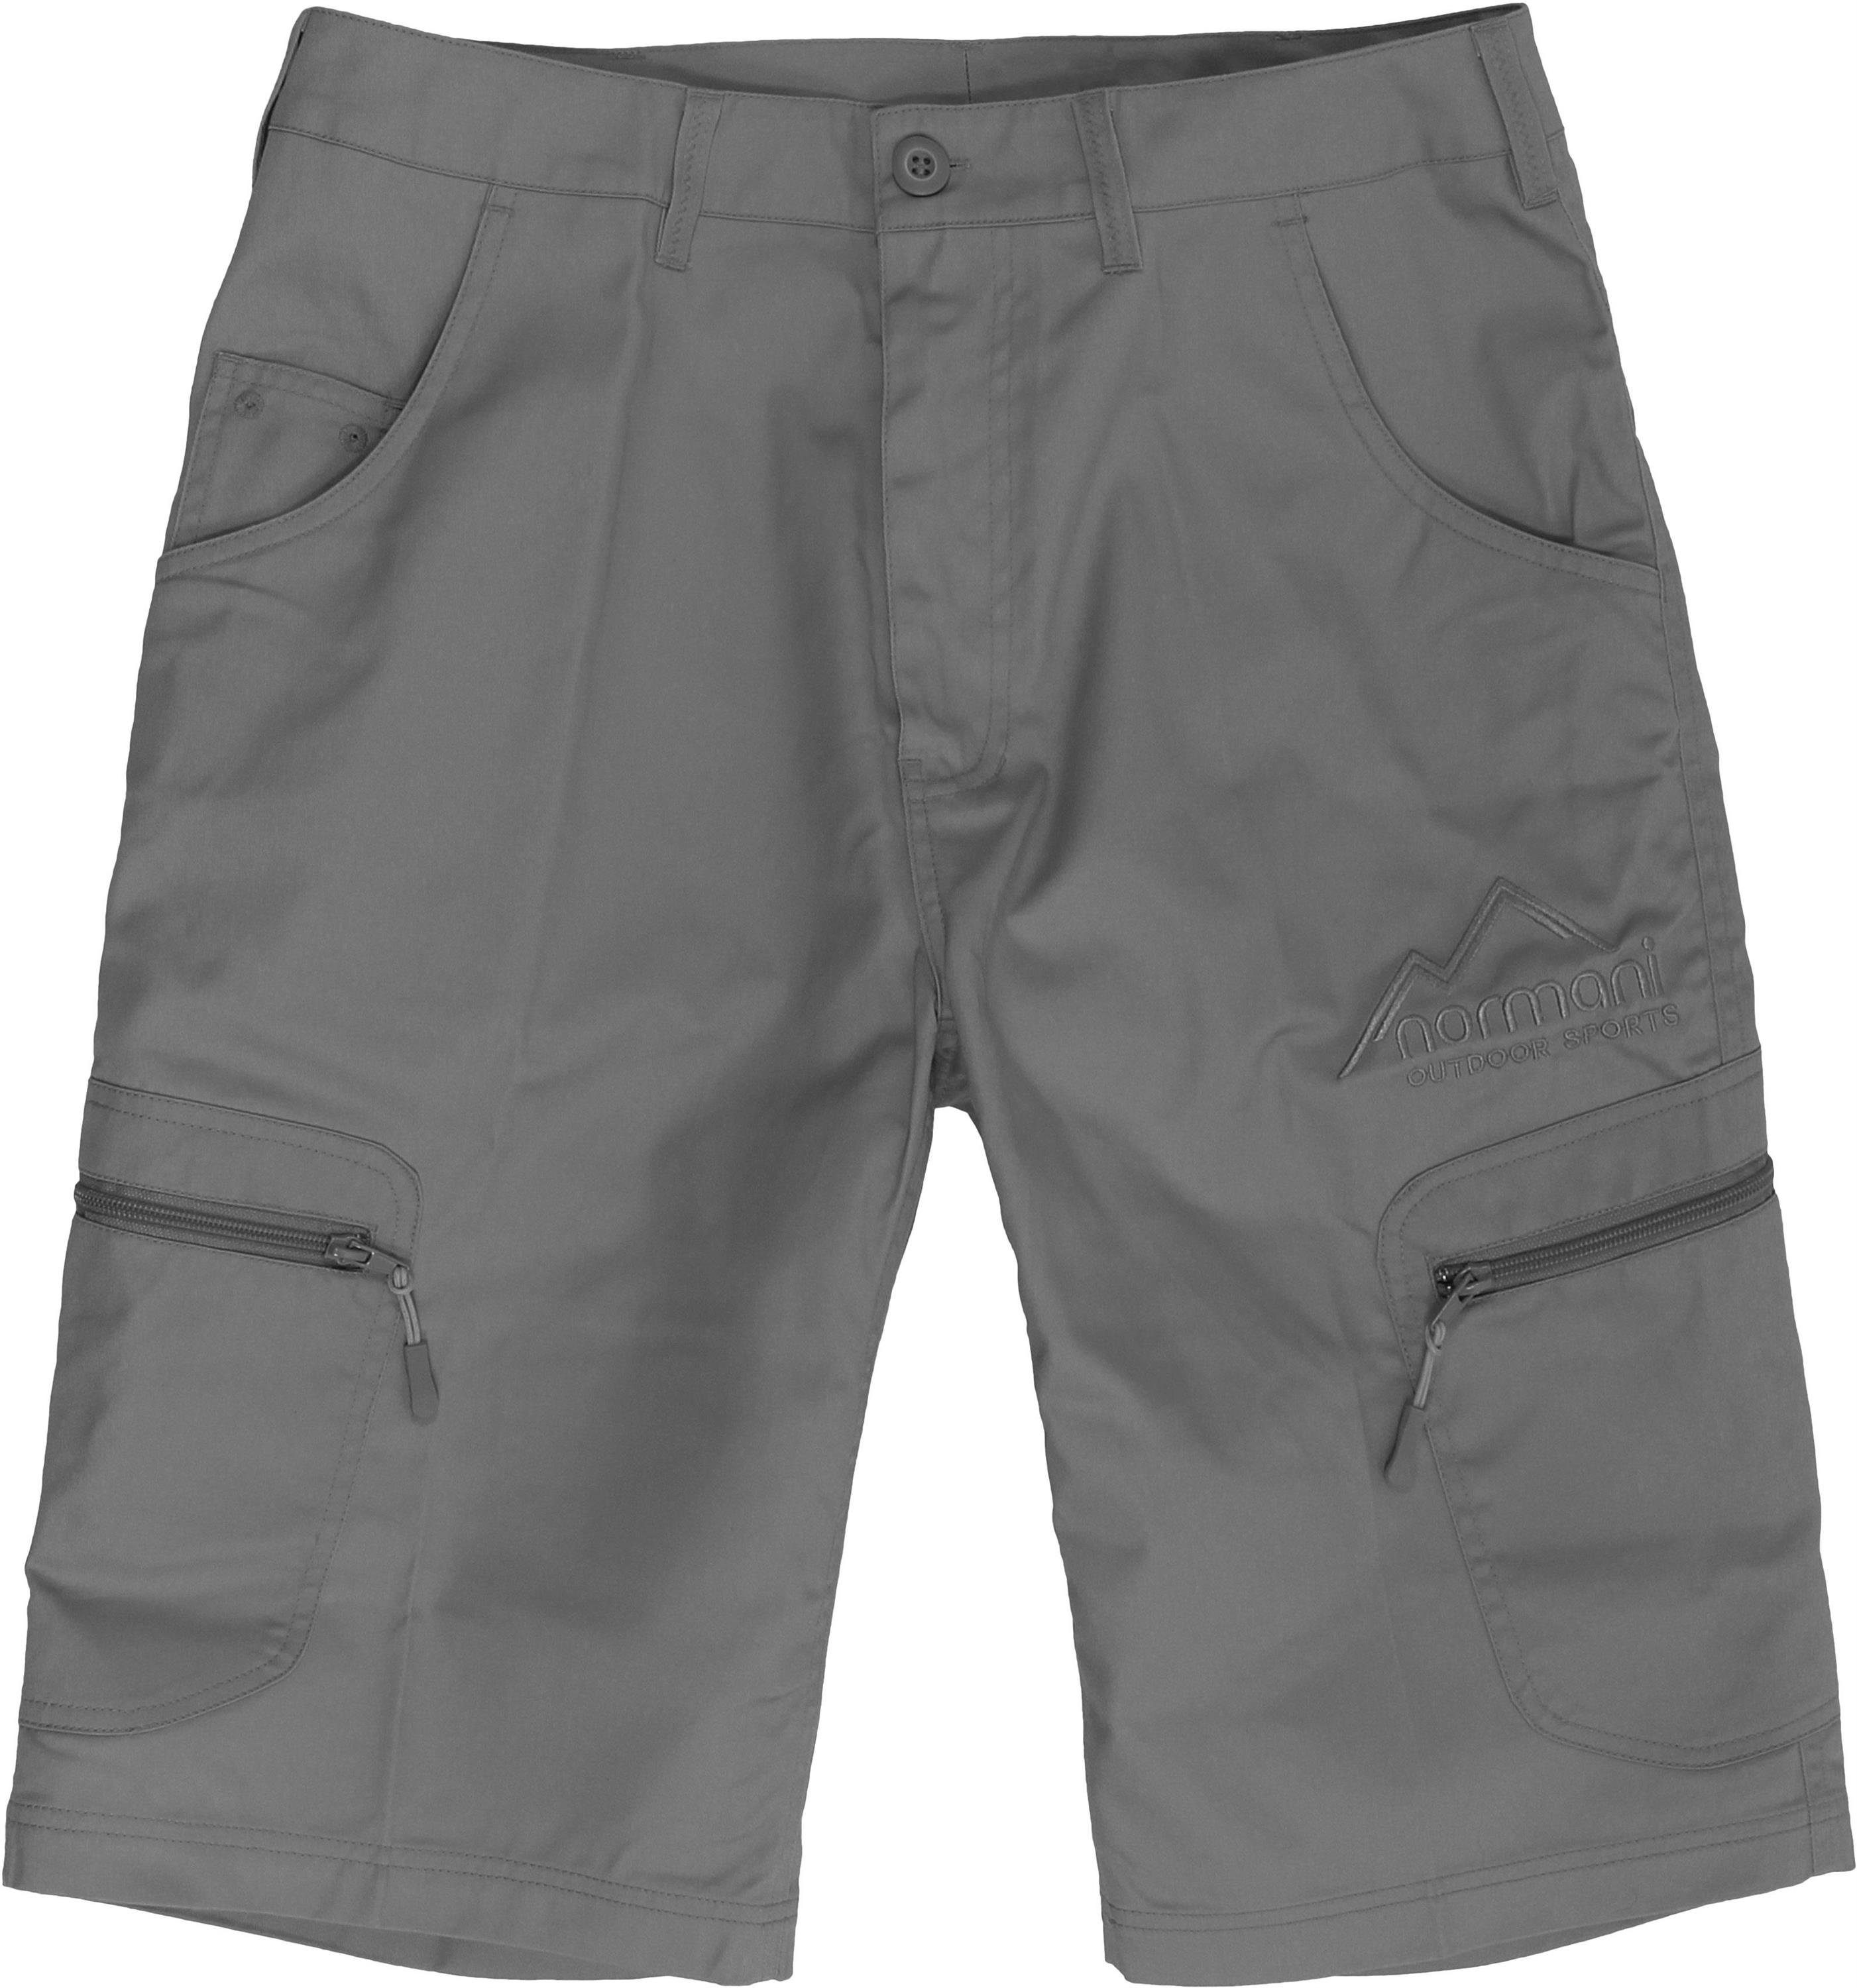 normani Bermudas Shorts mit Sonnenschutzfaktor mit UV-Schutz BDU Valley Grau Sommershorts 50+ Herren